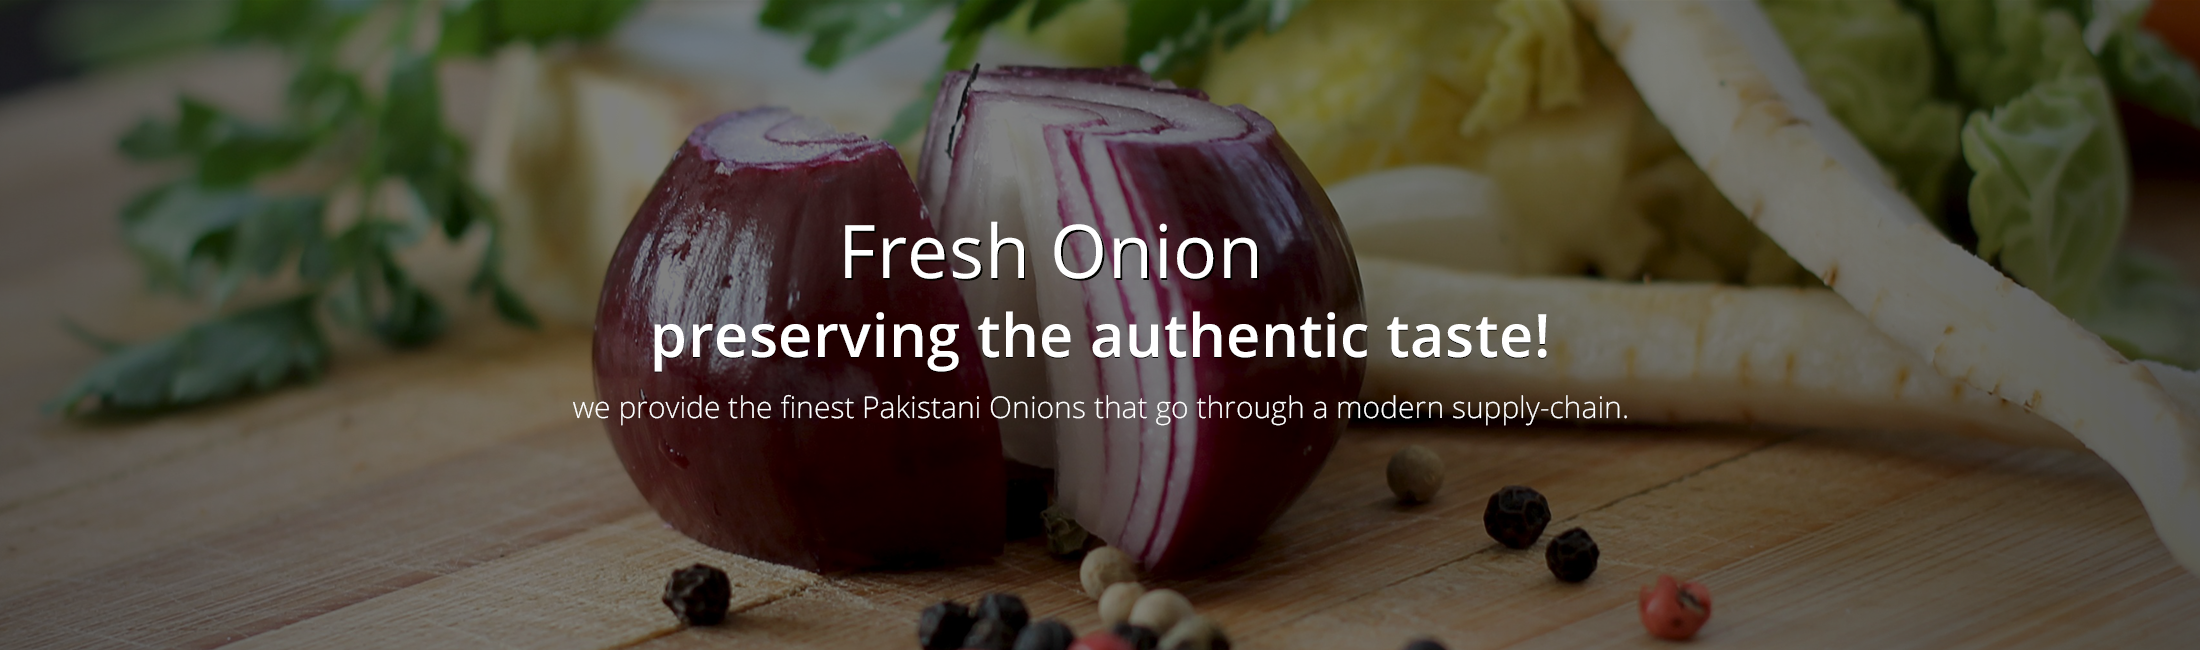 Fresh-Onion